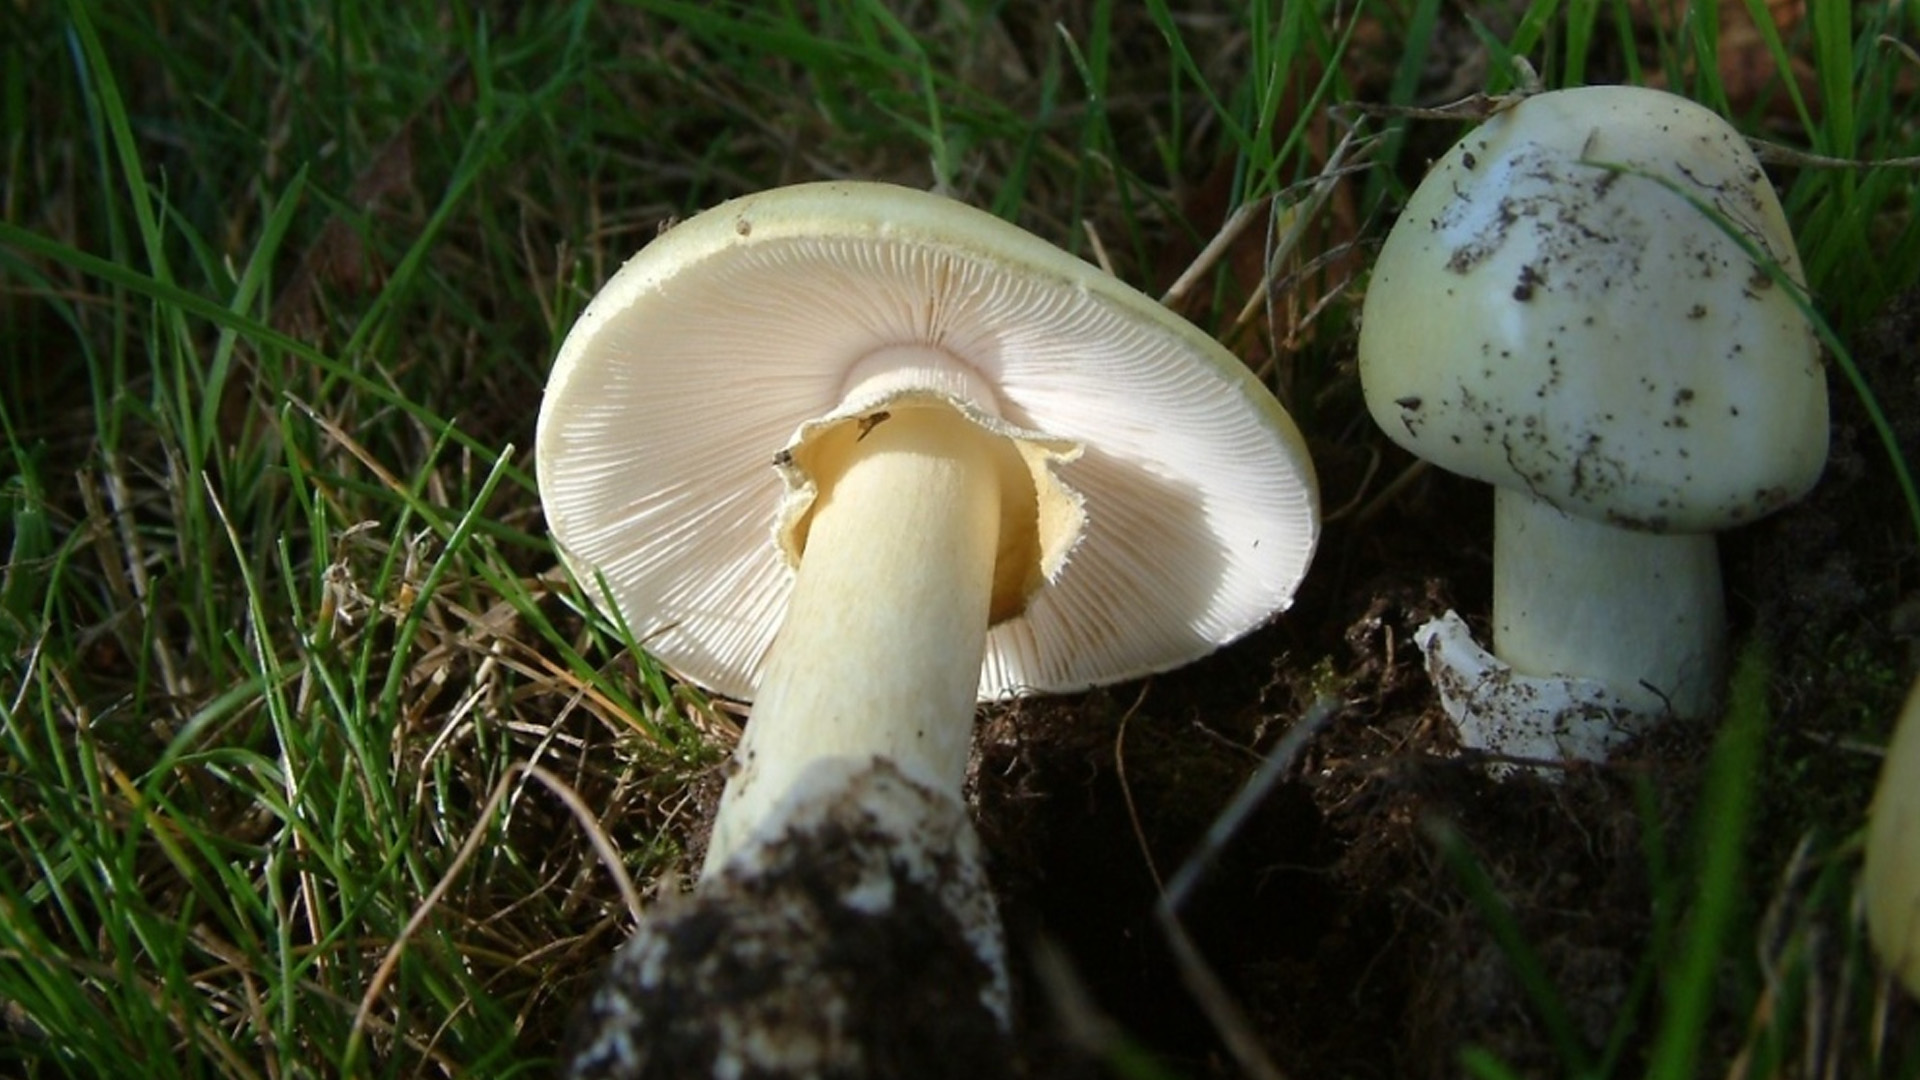 Les champignons sauvages qui auraient causé un triple homicide en Australie peuvent également être trouvés dans les forêts canadiennes.